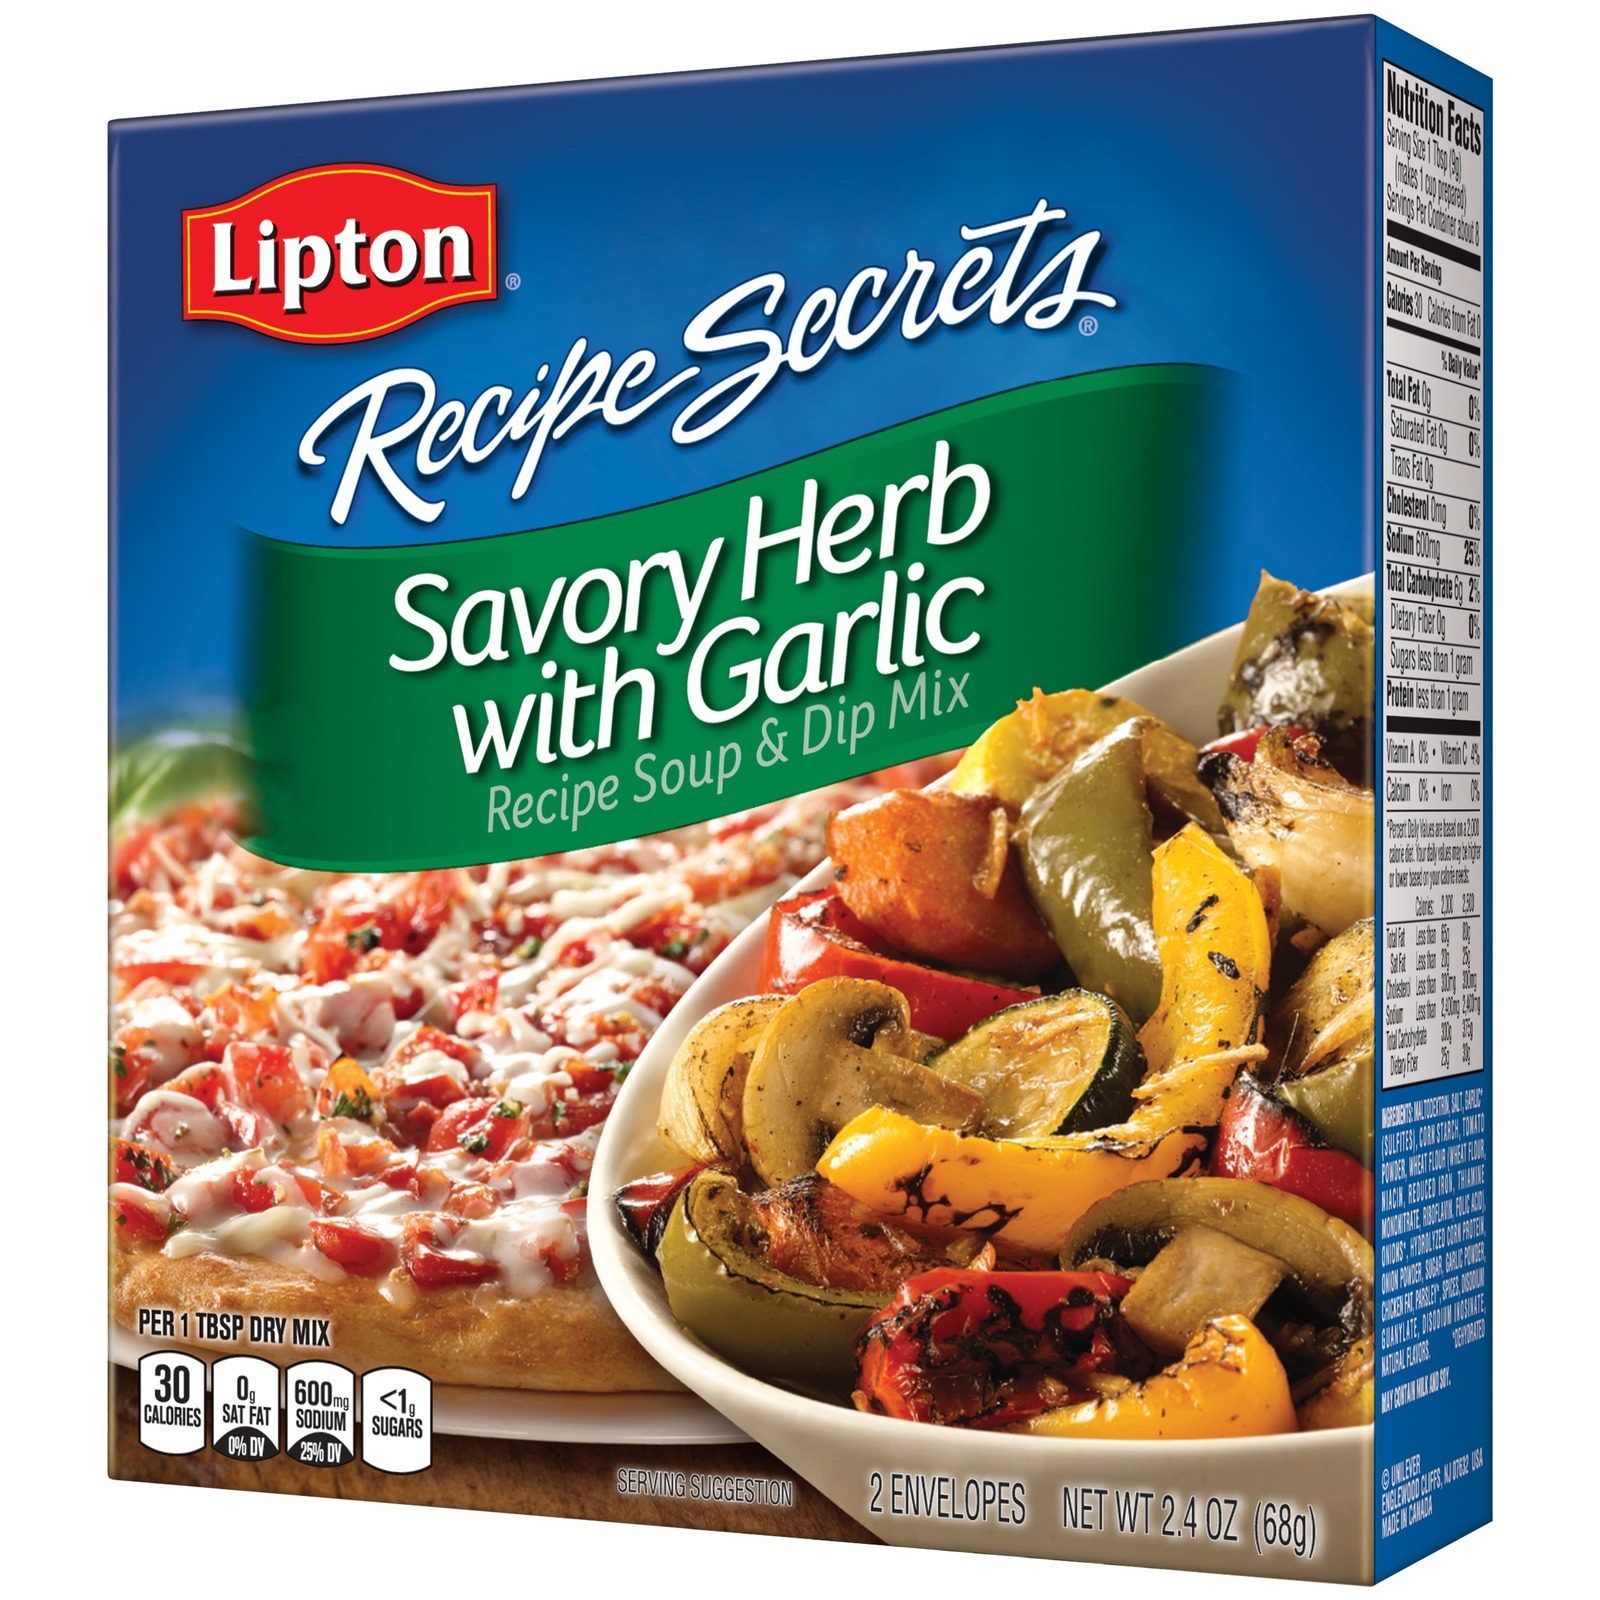 Lipton Recipe Secrets Savory Herb with Garlic Soup & Dip Mix 2.4 oz